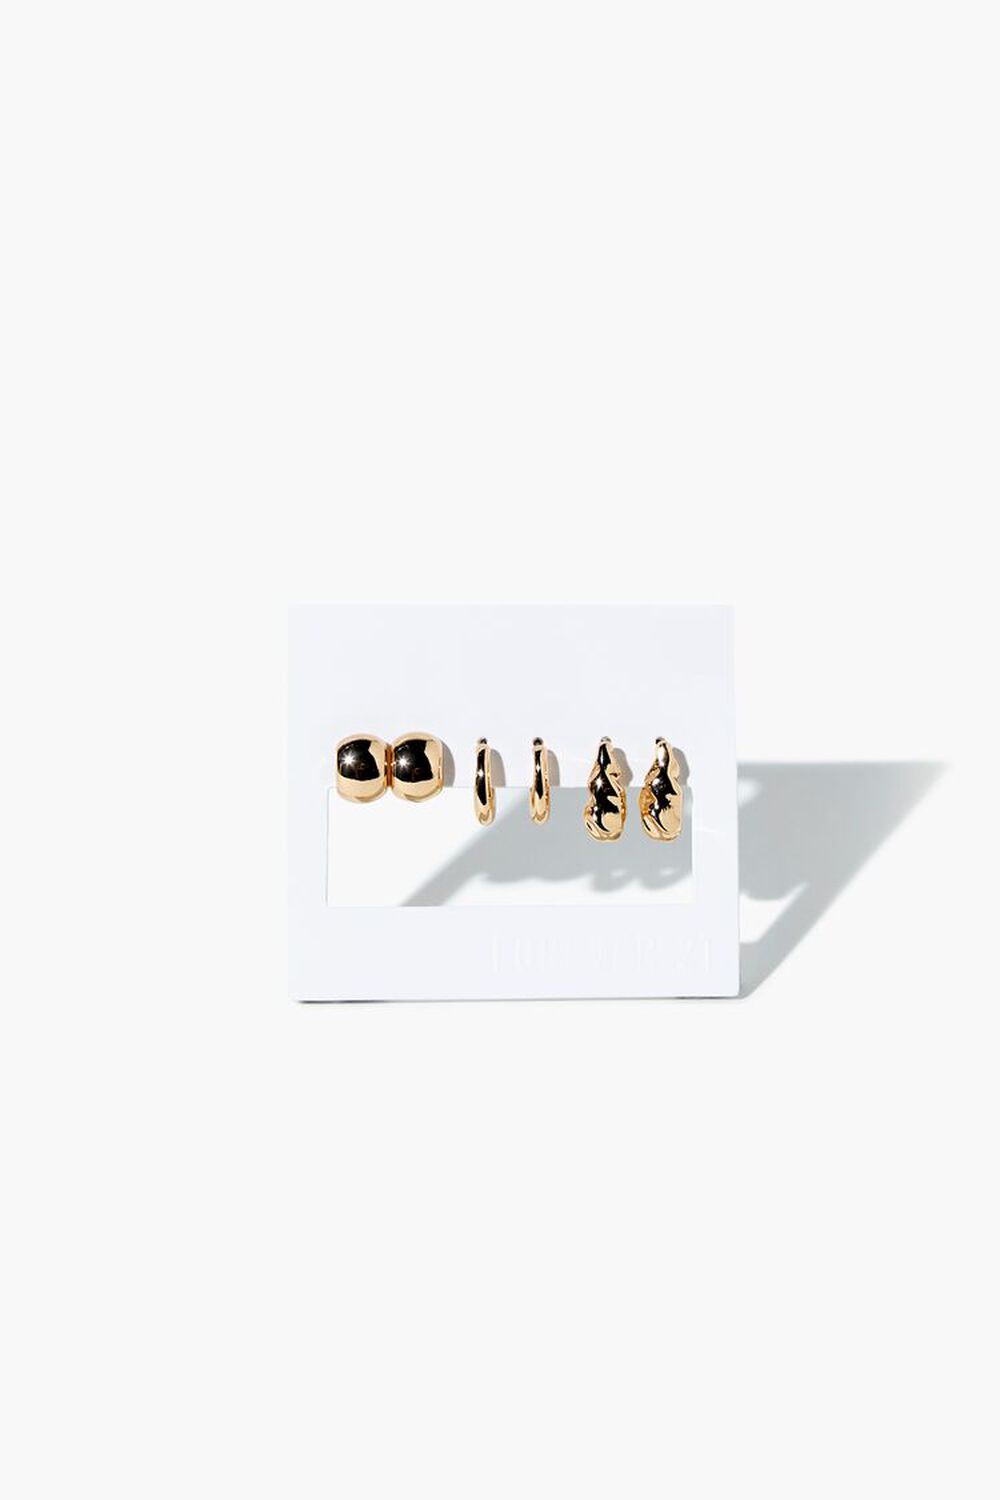 GOLD Stud & Hoop Earrings Set, image 2